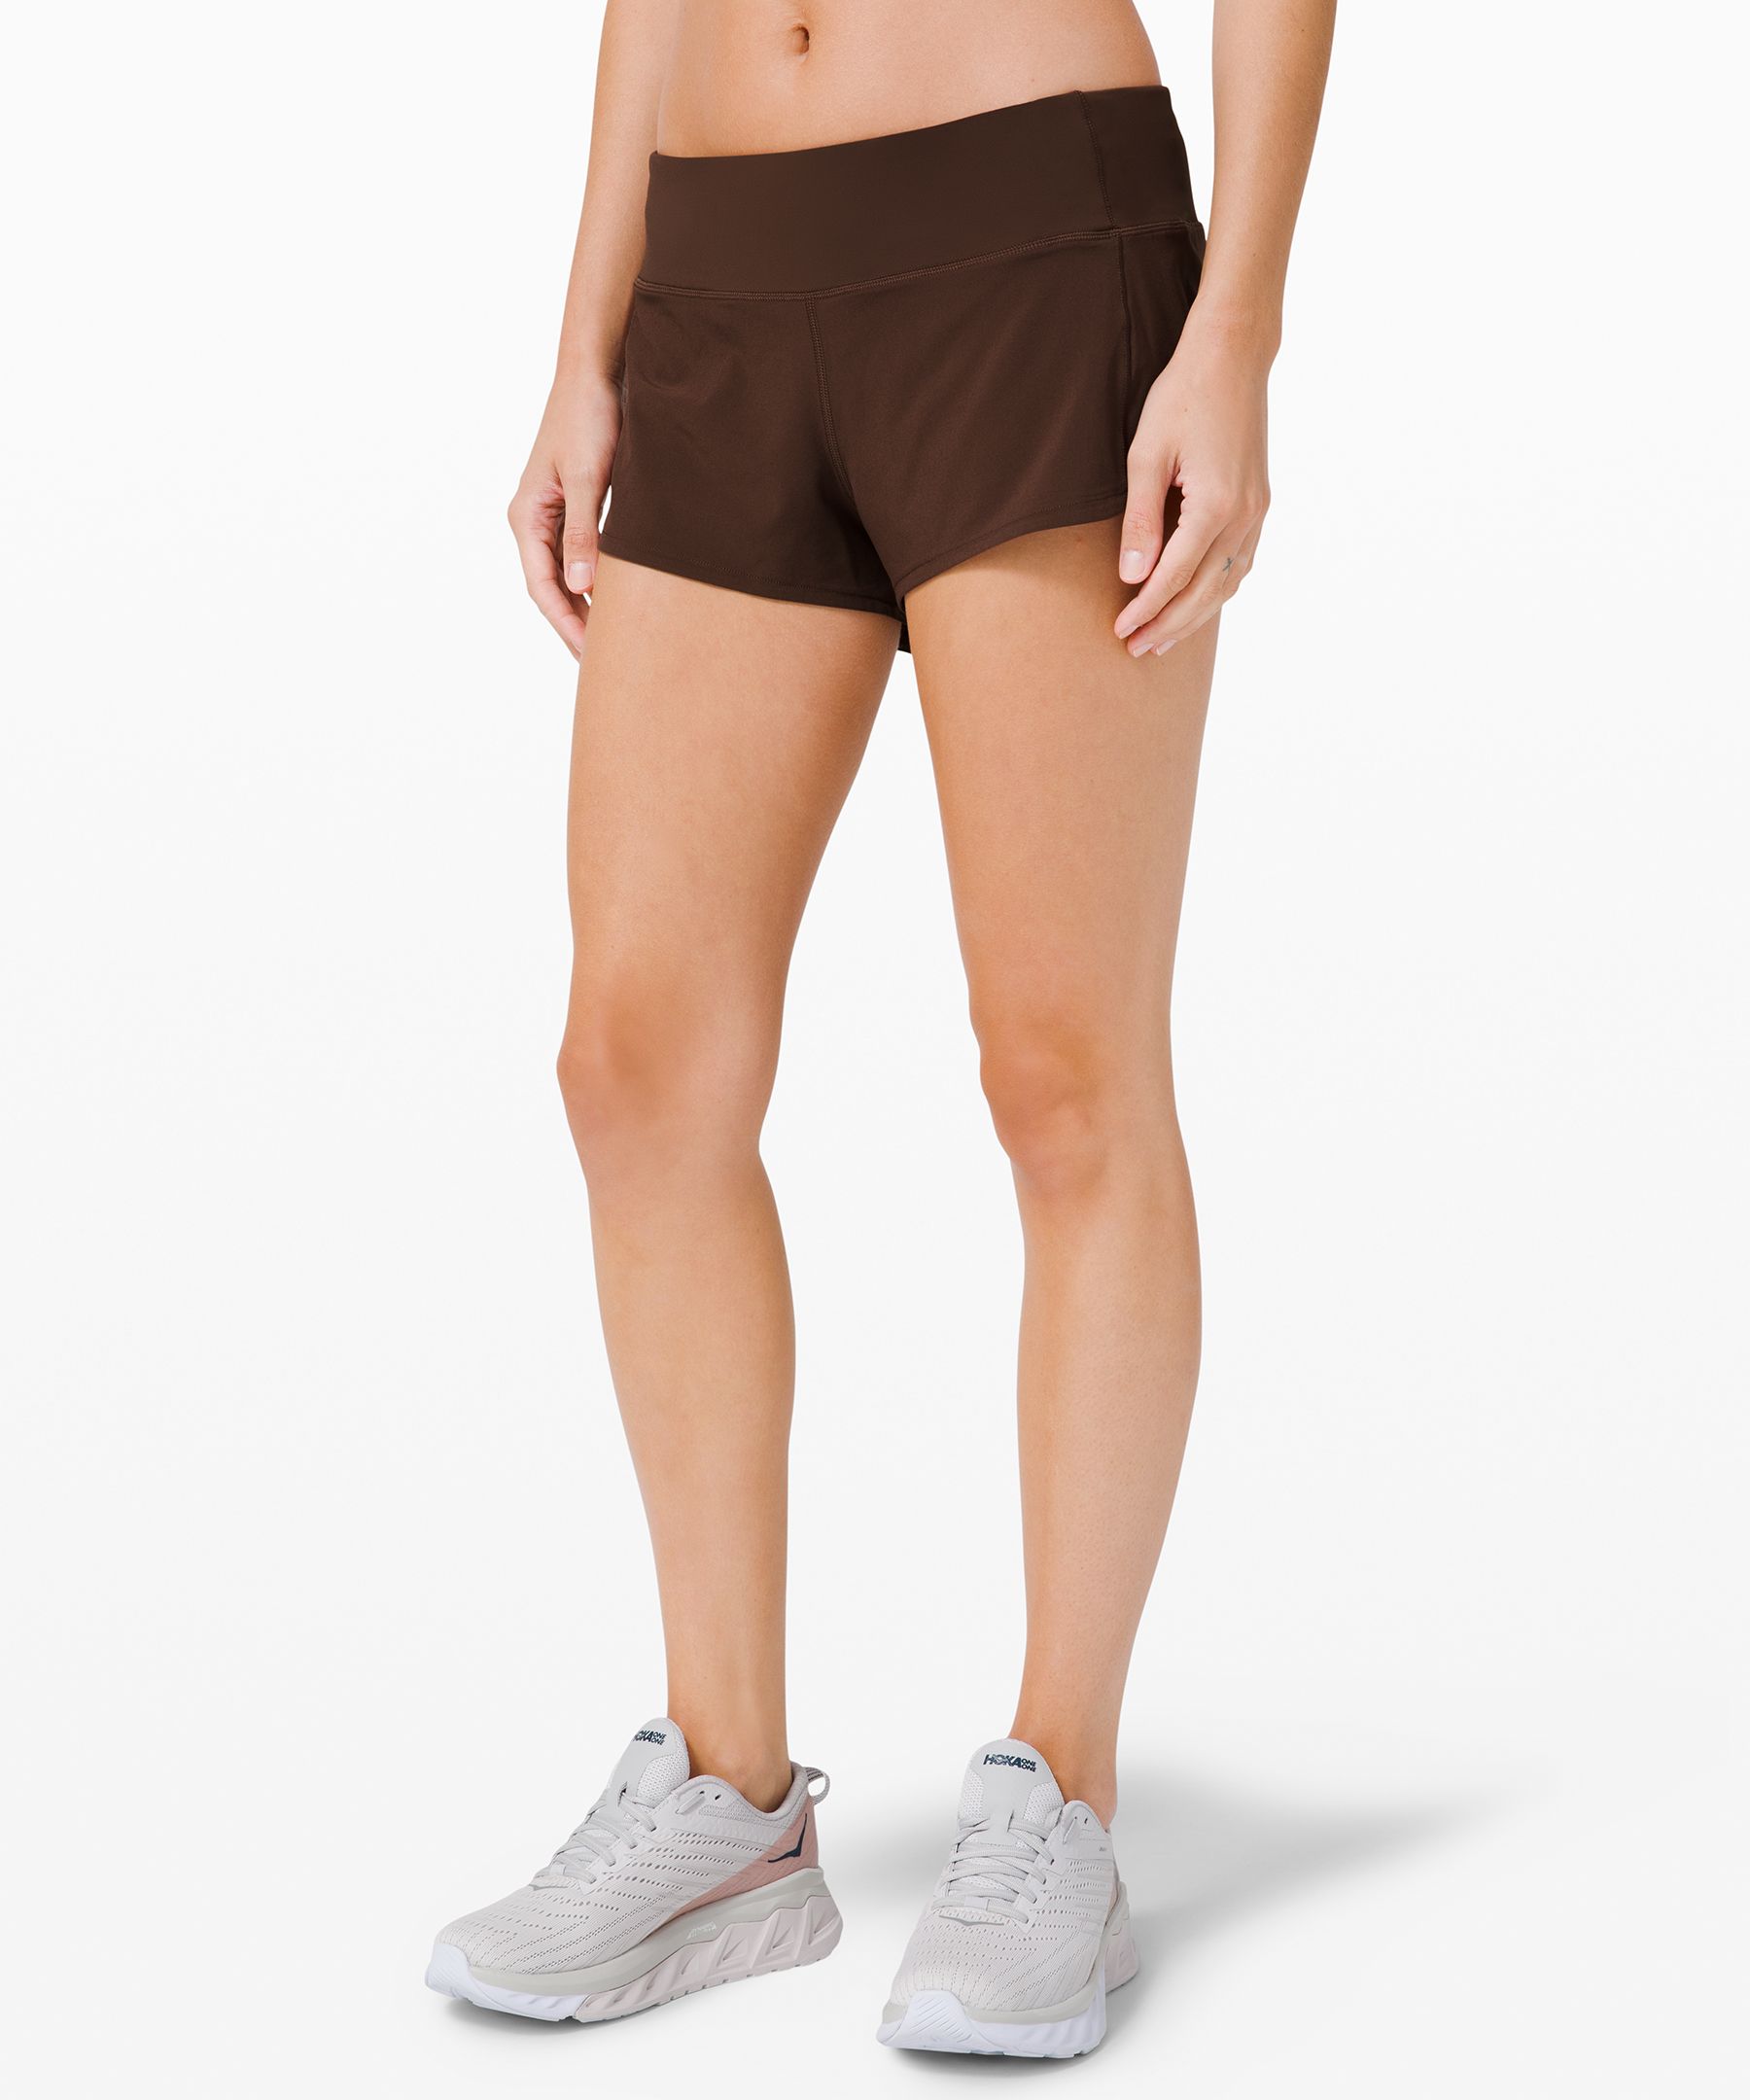 lululemon shorts 2.5